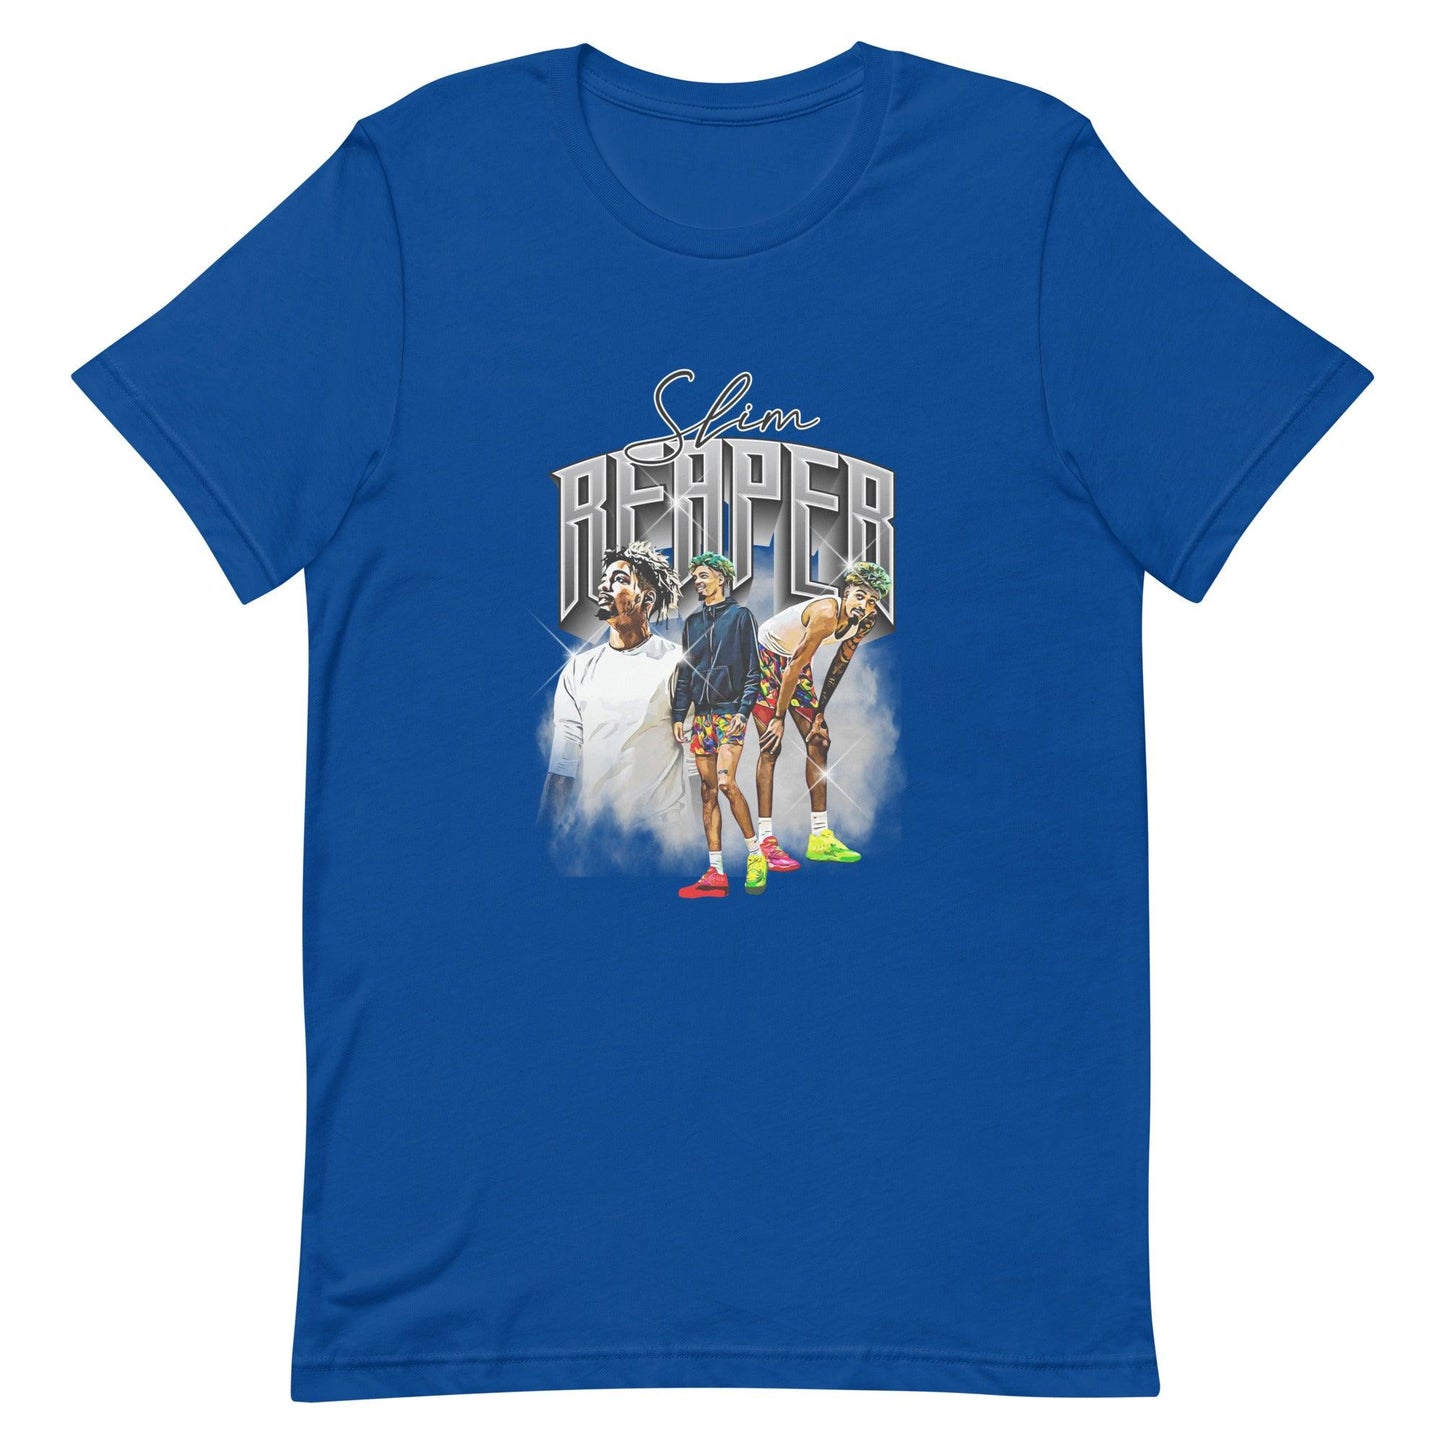 Slim Reaper “Heritage” t-shirt - Fan Arch